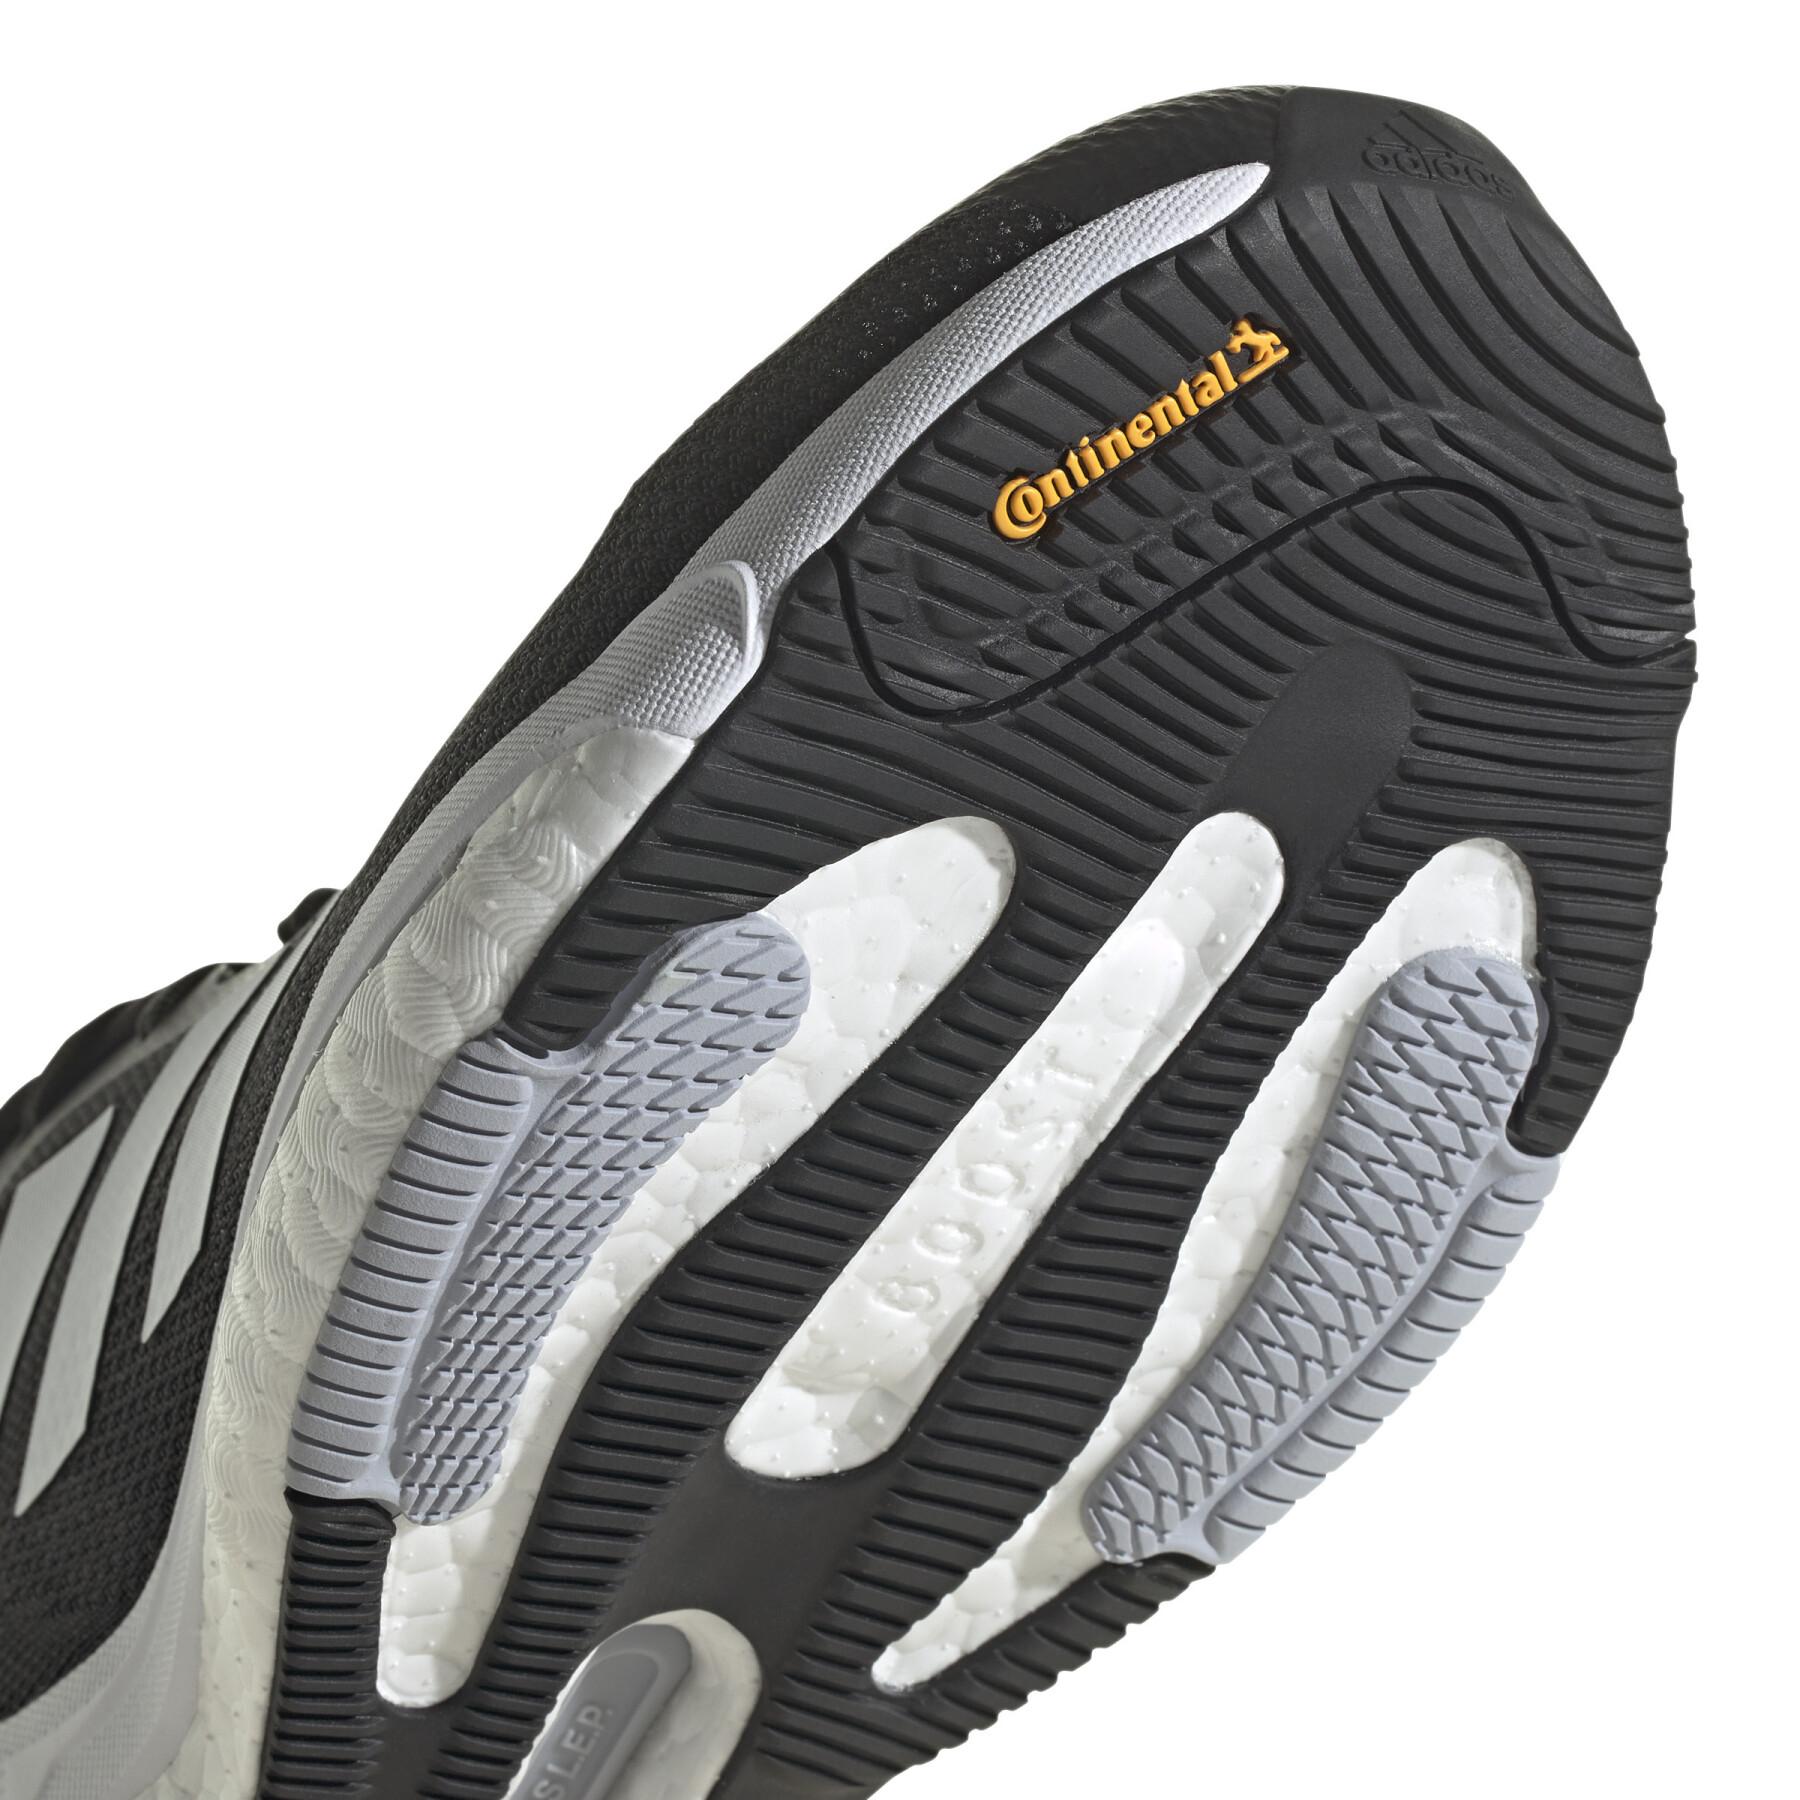 Sapatos de running adidas Solarglide 5